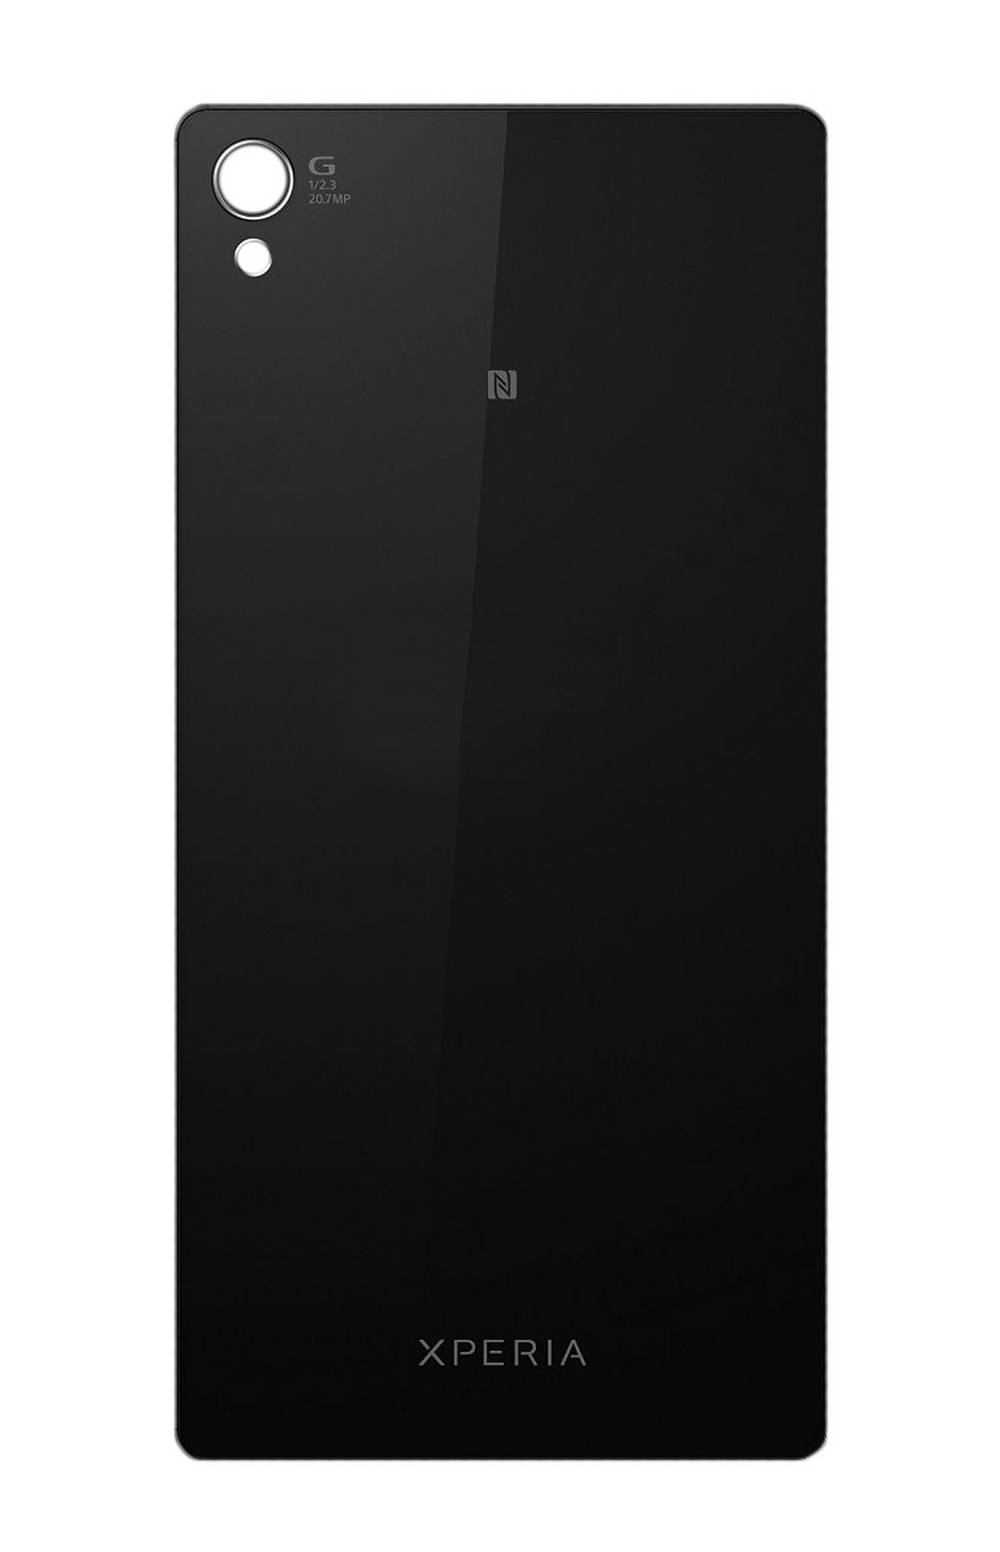 Καπάκι Μπαταρίας Sony Xperia Z3 χωρίς Κεραία NFC Μαύρο OEM Type A